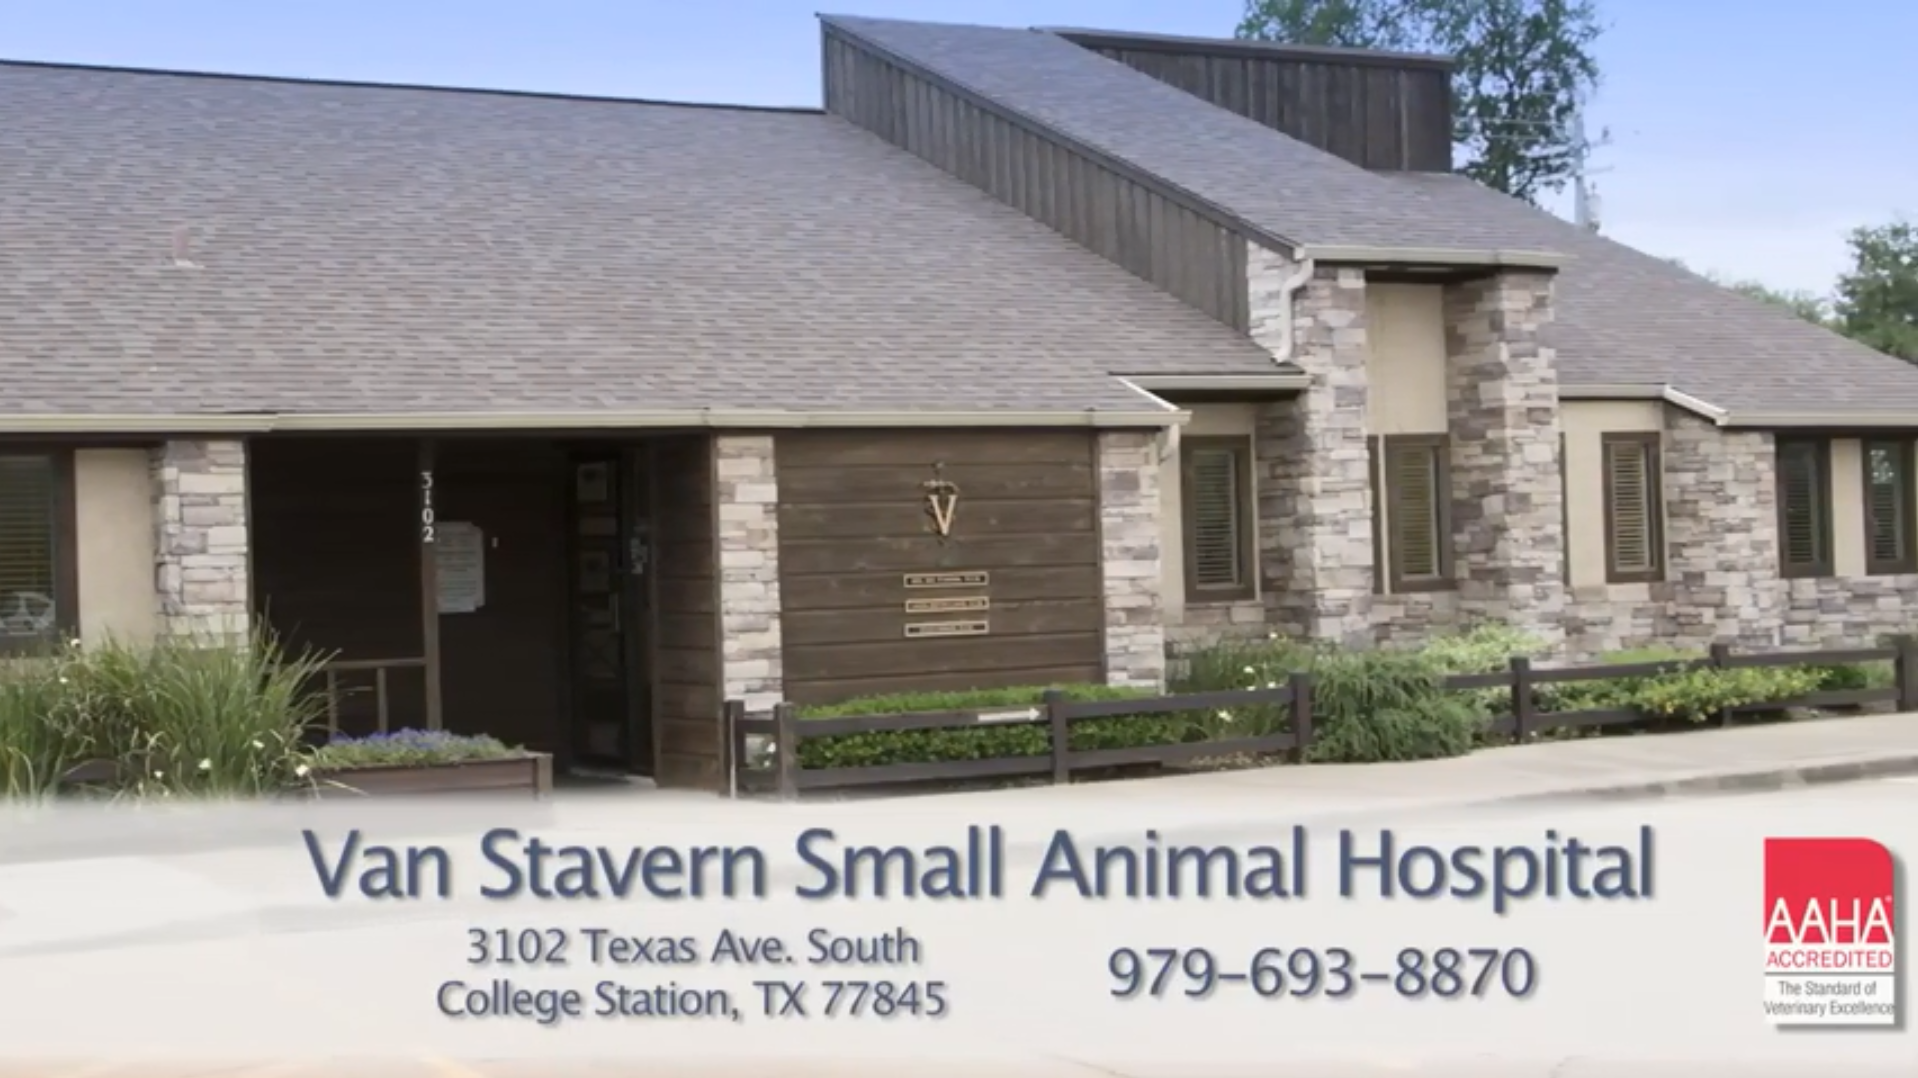 Van Stavern Small Animal Hospital